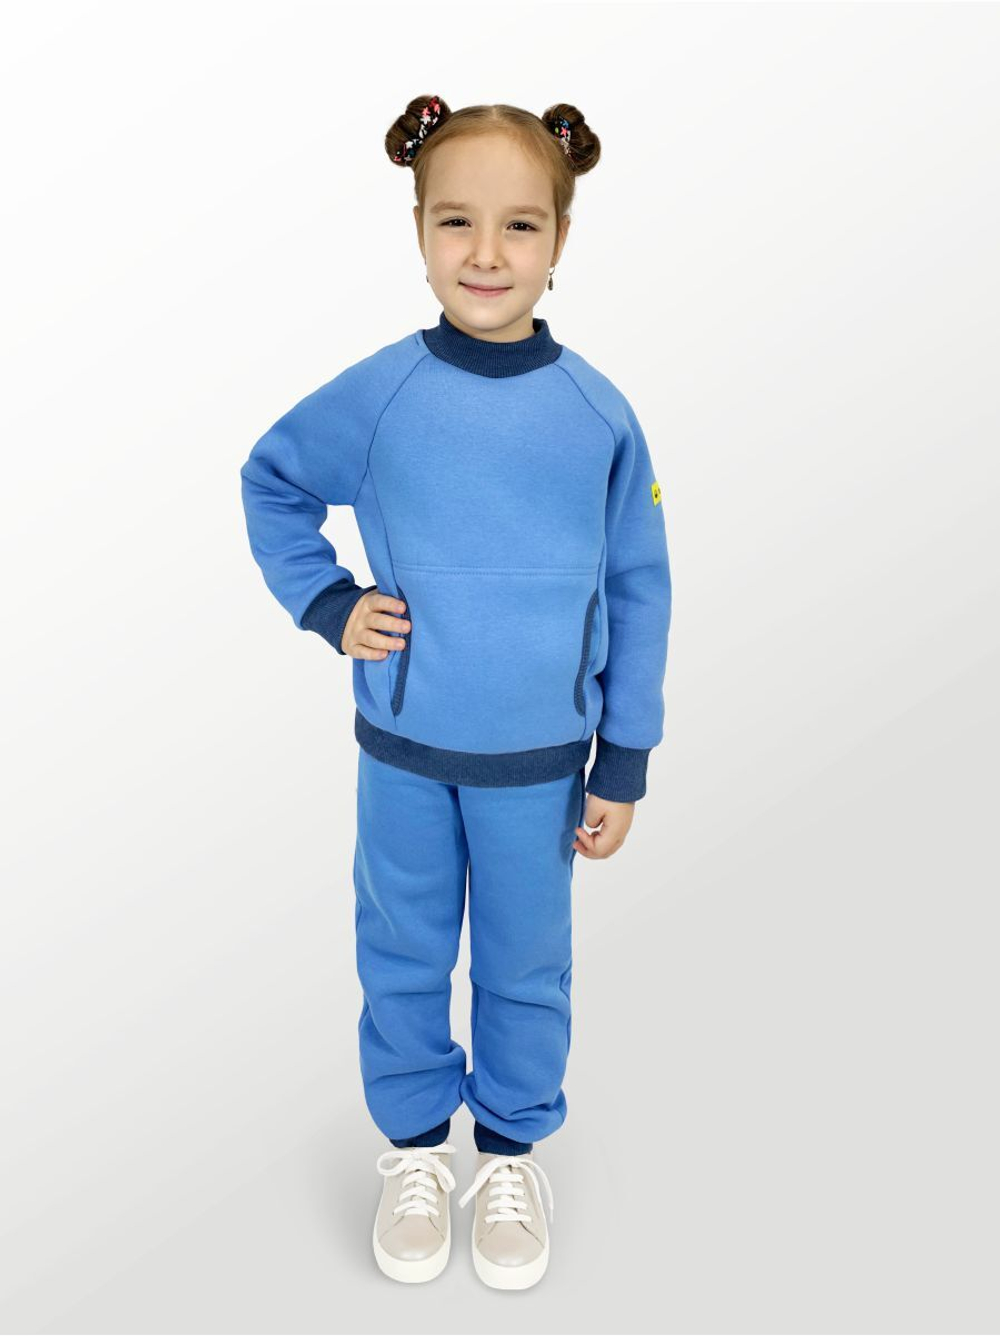 Худи для детей, модель №3, утепленный, рост 104 см, голубой